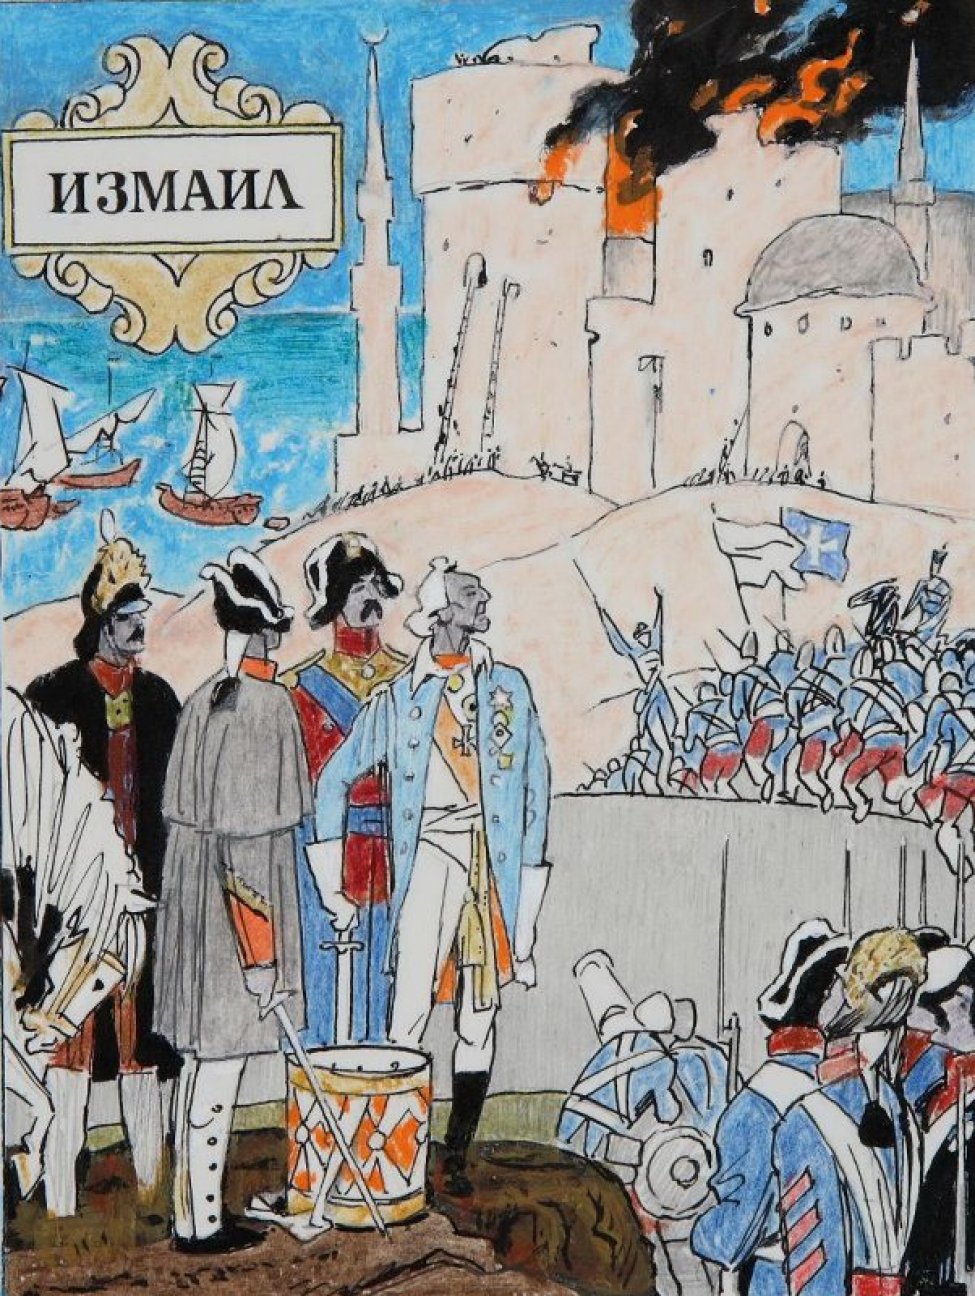 На первом плане слева изображен Суворов с тремя офицерами; справа - группа солдат, глядящих на Суворова. На втором плане справа воины в голубых мундирах бегущие в сторону горящей крепости. Вдали слева видно море и три парусных судна. В верхней части рисунка печатным шрифтом: ИЗМАИЛ.